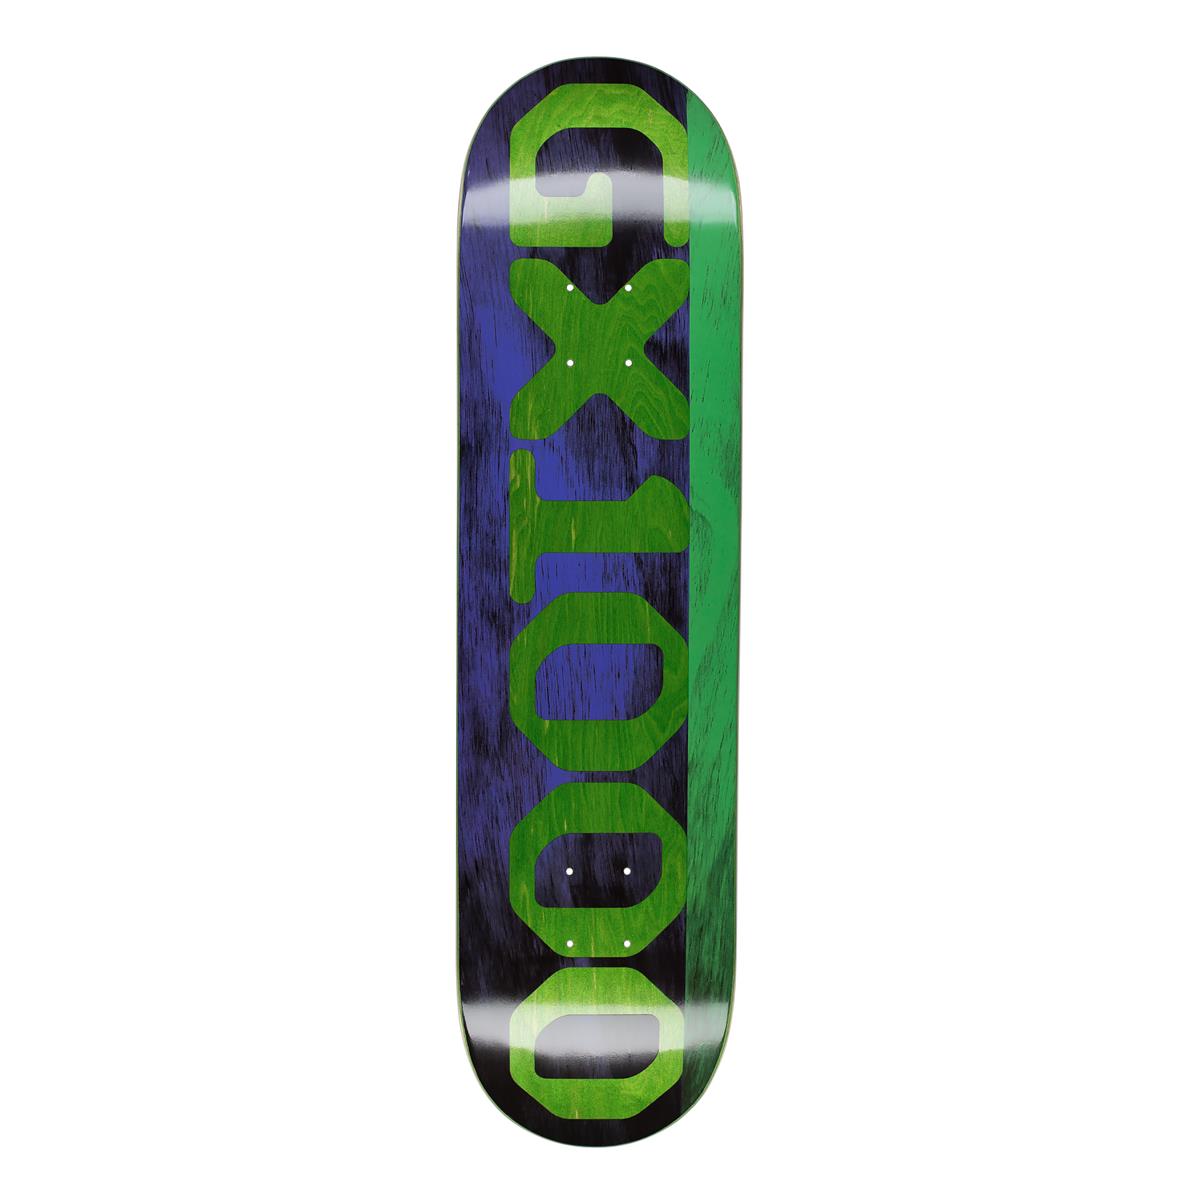 GX1000 – Deck aus geteiltem Furnier in Lila/Grün